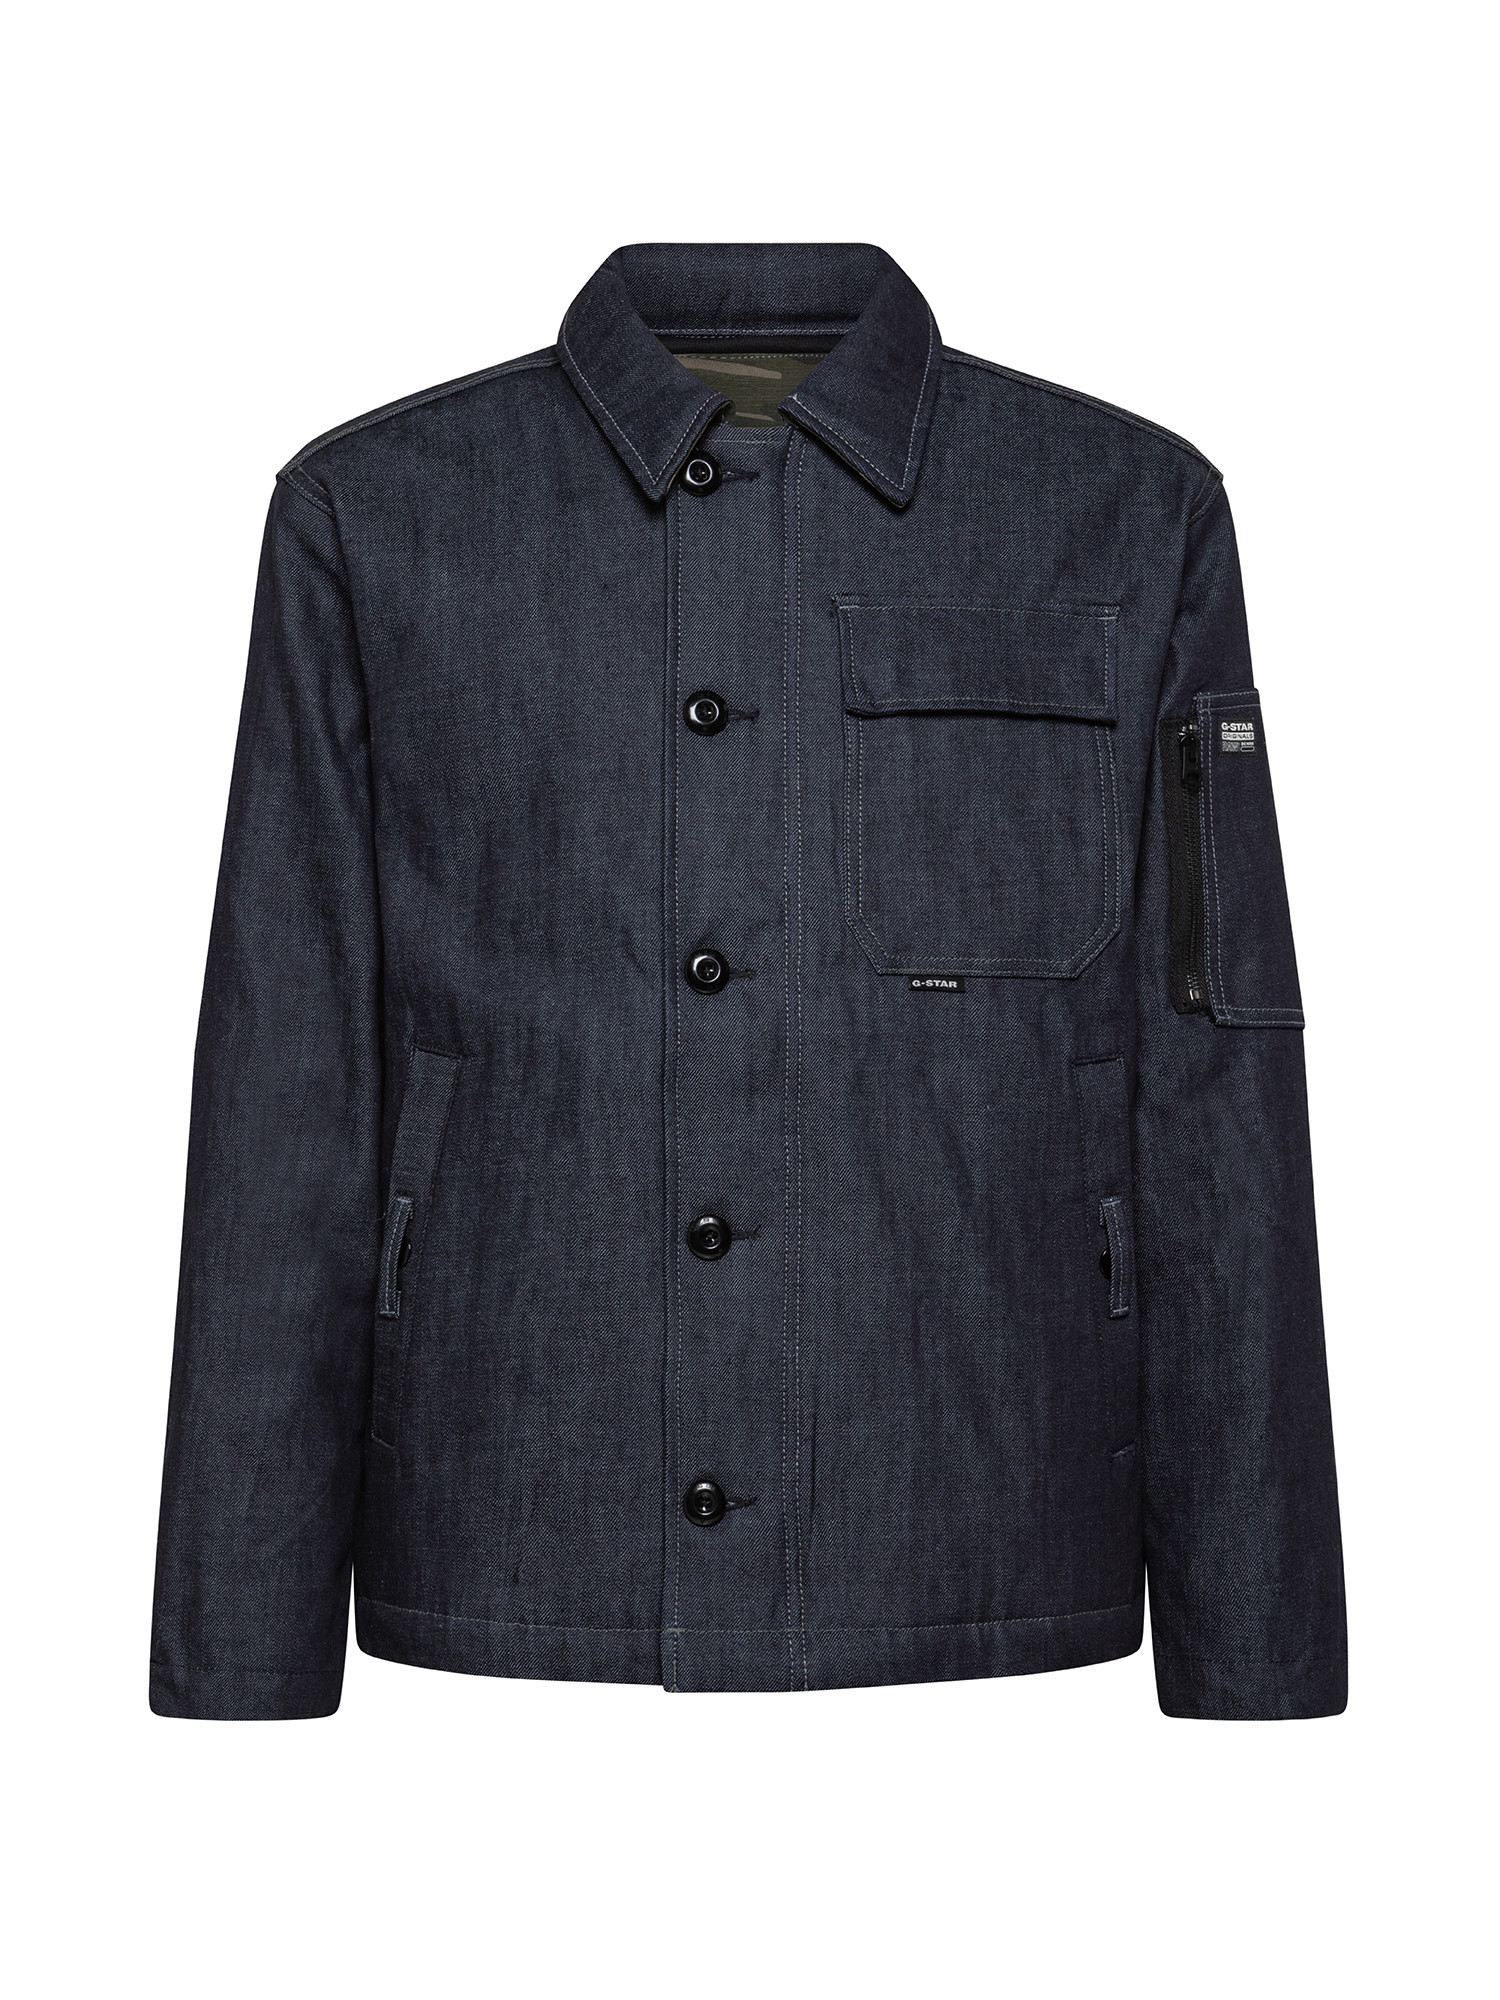 G-Star - Padded denim jacket, Denim, large image number 0